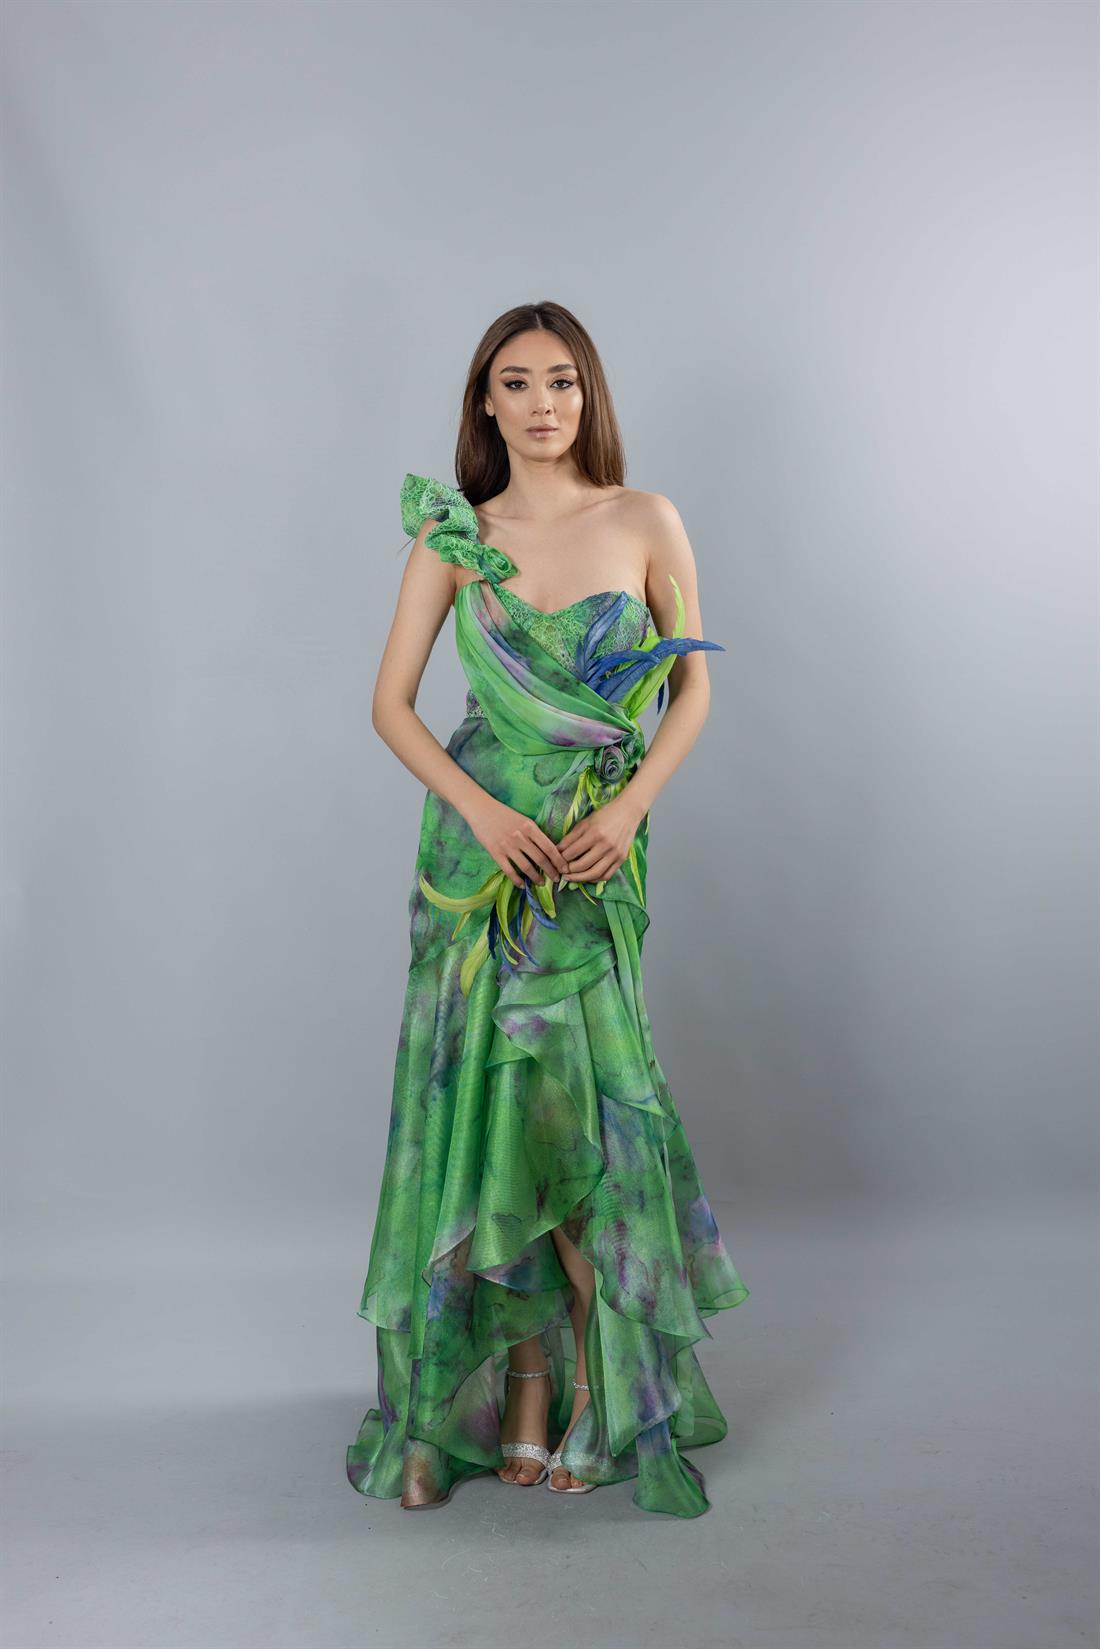 Tek Omuz Fırfırlı Etek Desenli Yeşil Abiye Elbise - egelin